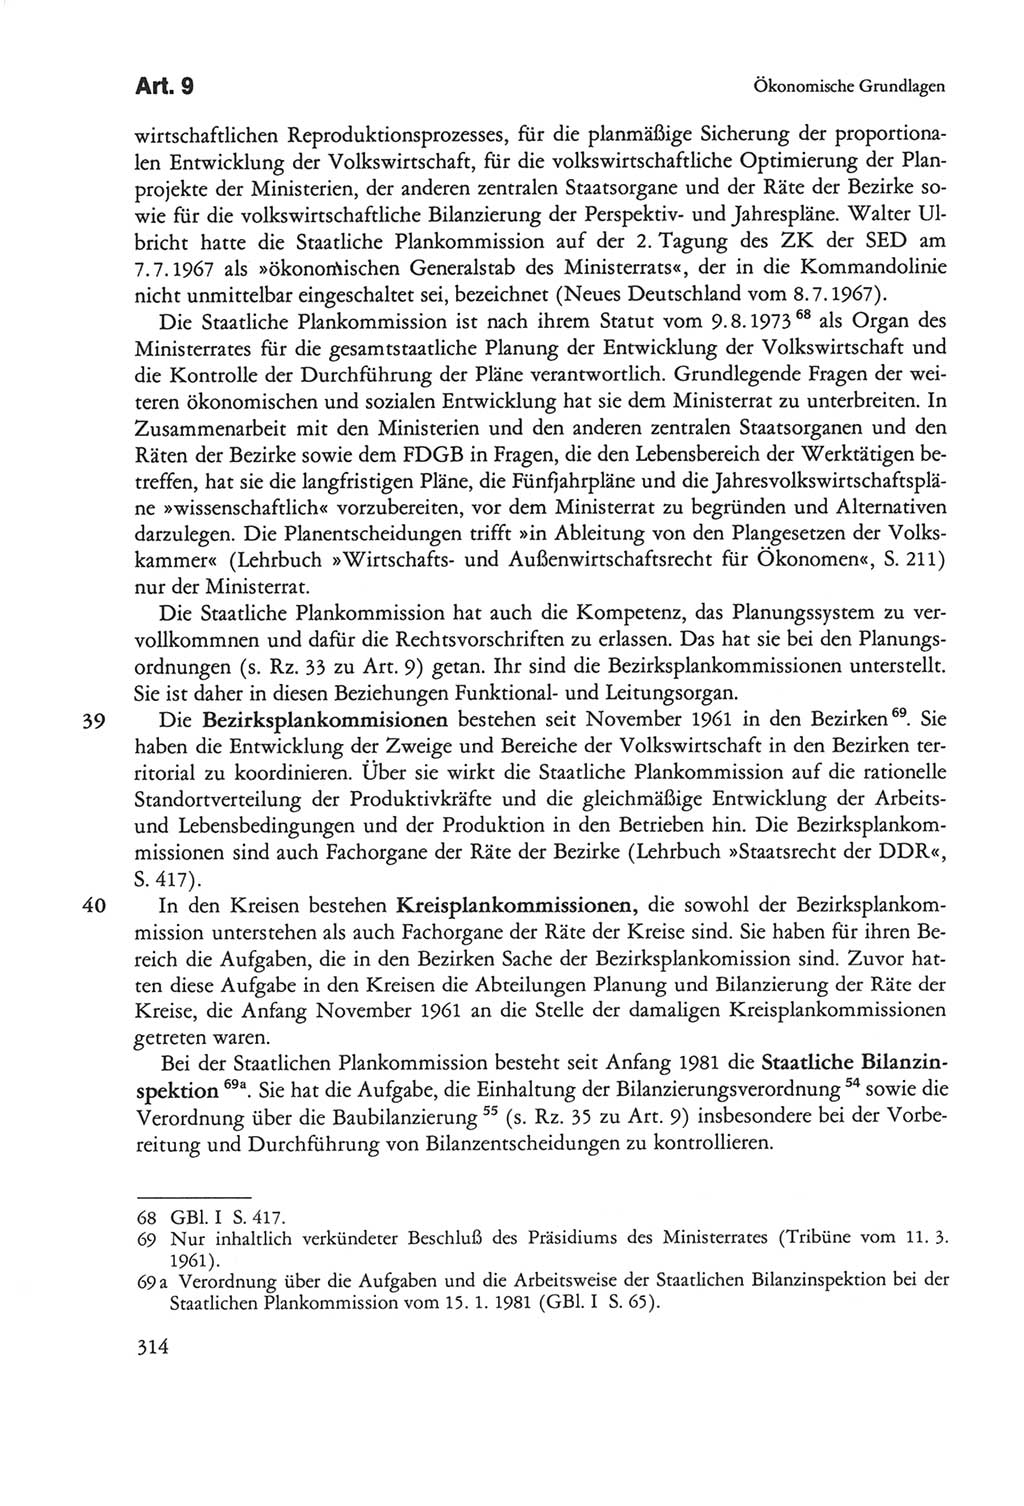 Die sozialistische Verfassung der Deutschen Demokratischen Republik (DDR), Kommentar mit einem Nachtrag 1997, Seite 314 (Soz. Verf. DDR Komm. Nachtr. 1997, S. 314)